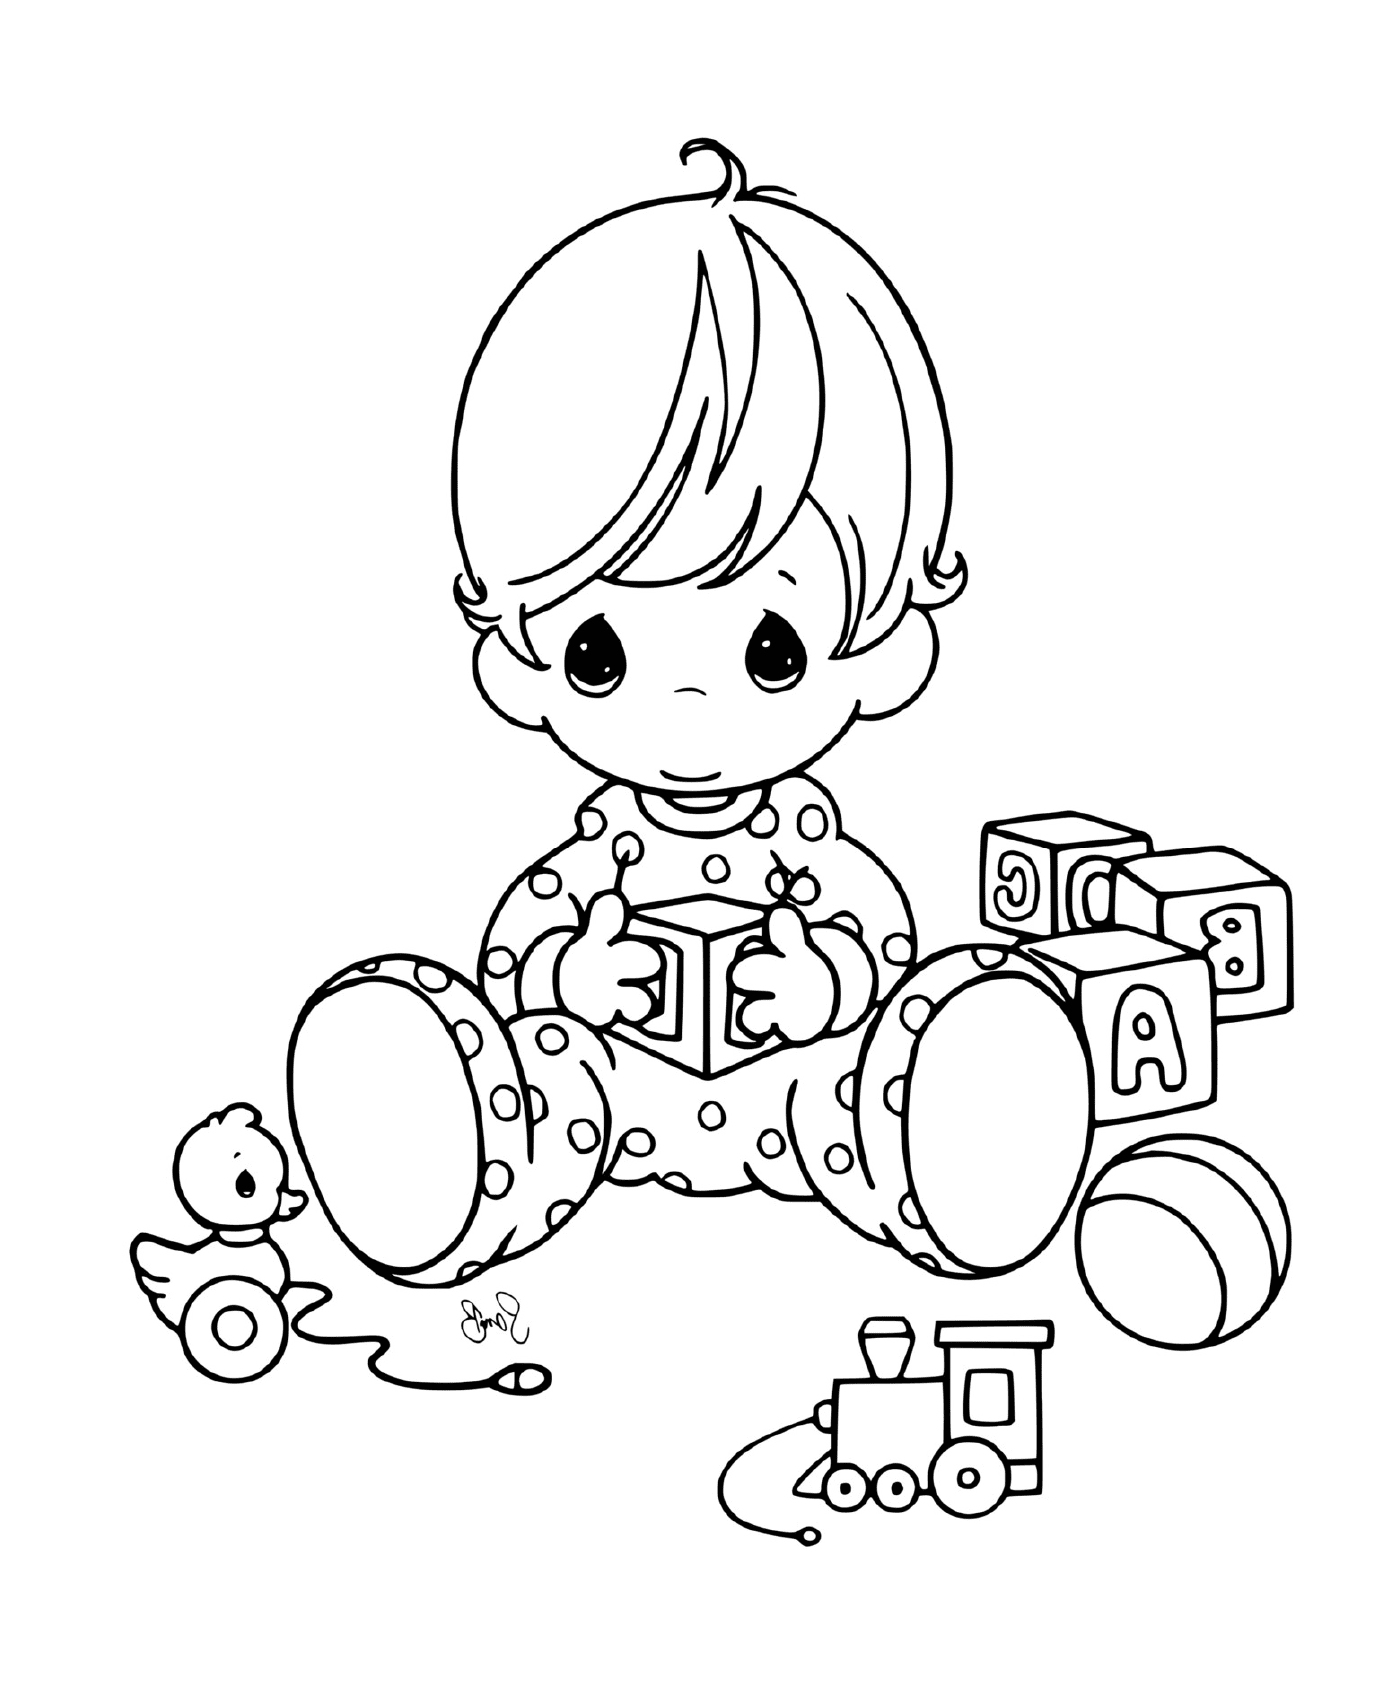  Un bambino con i suoi giocattoli 